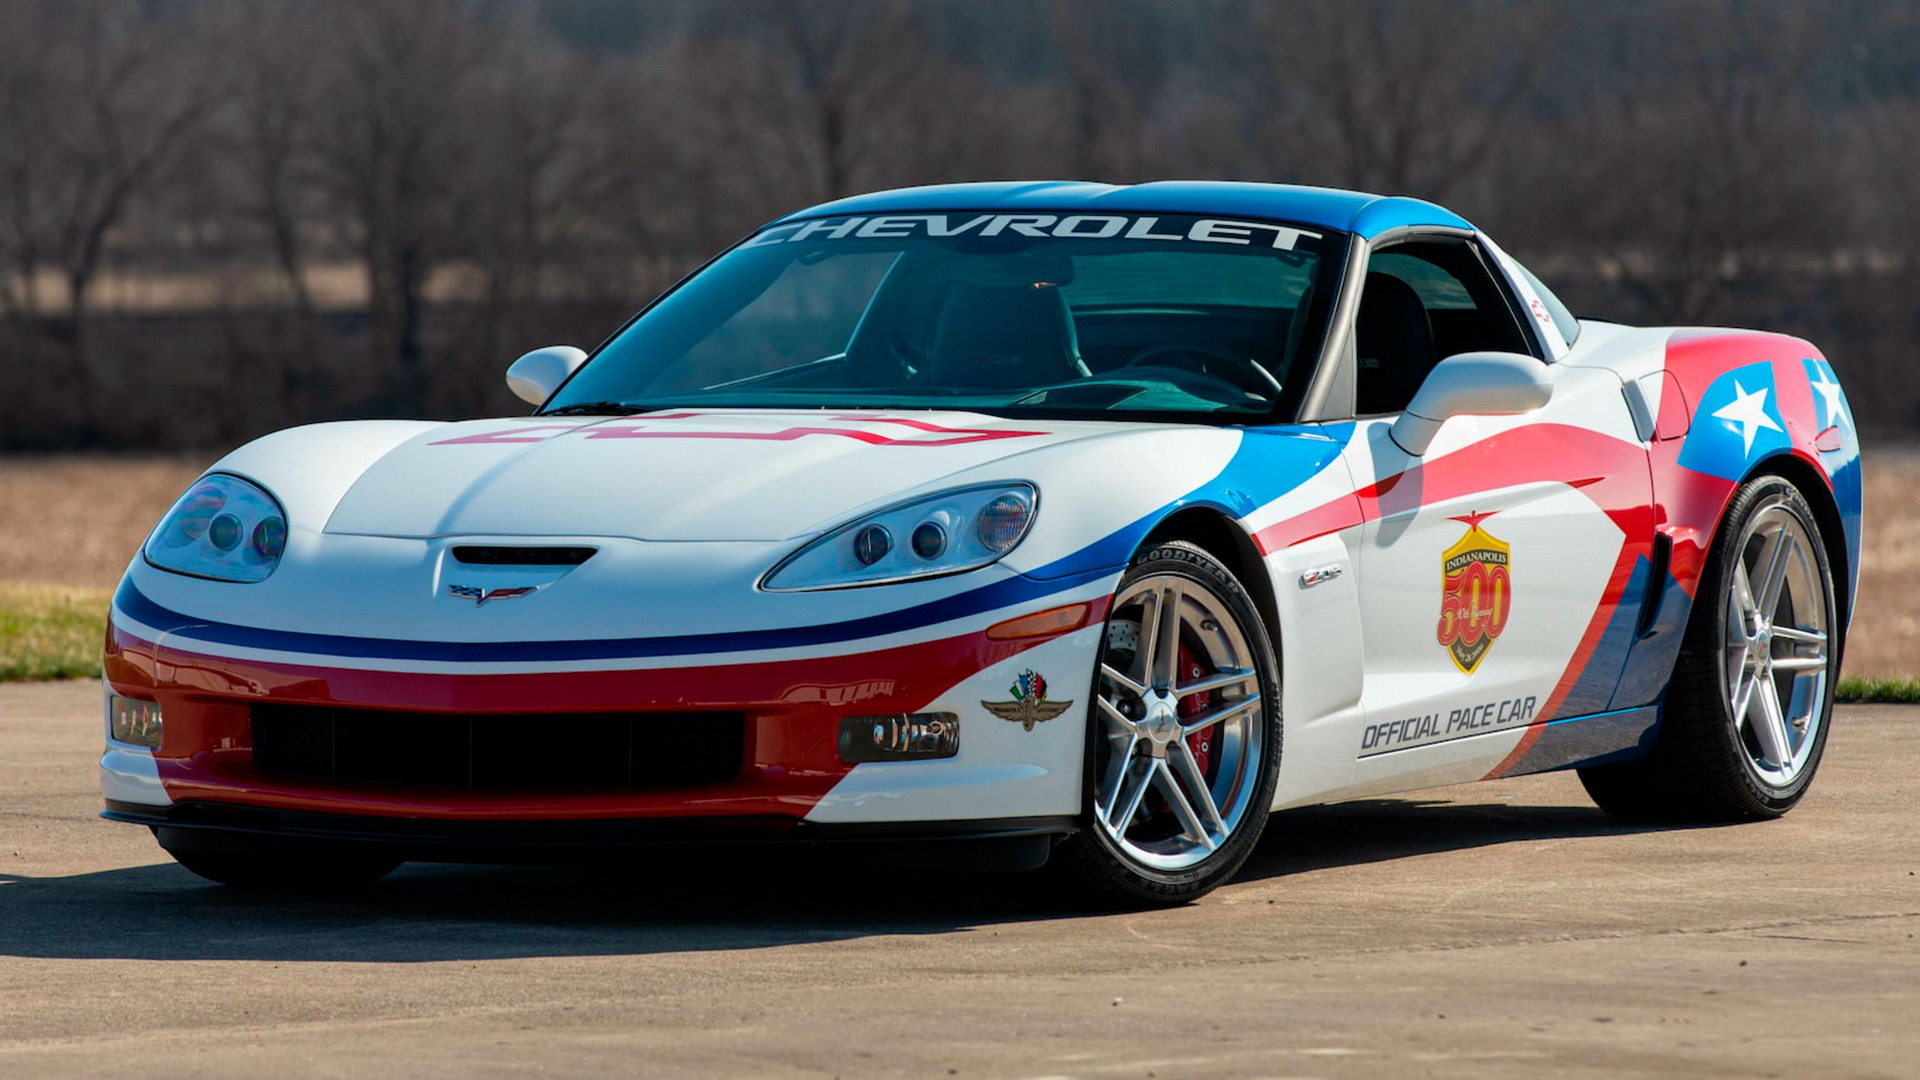 Lác mắt với bộ sưu tập siêu xe khổng lồ gồm 18 chiếc Corvette Pace 500 Indy rao bán tại Mecum - Ảnh 12.